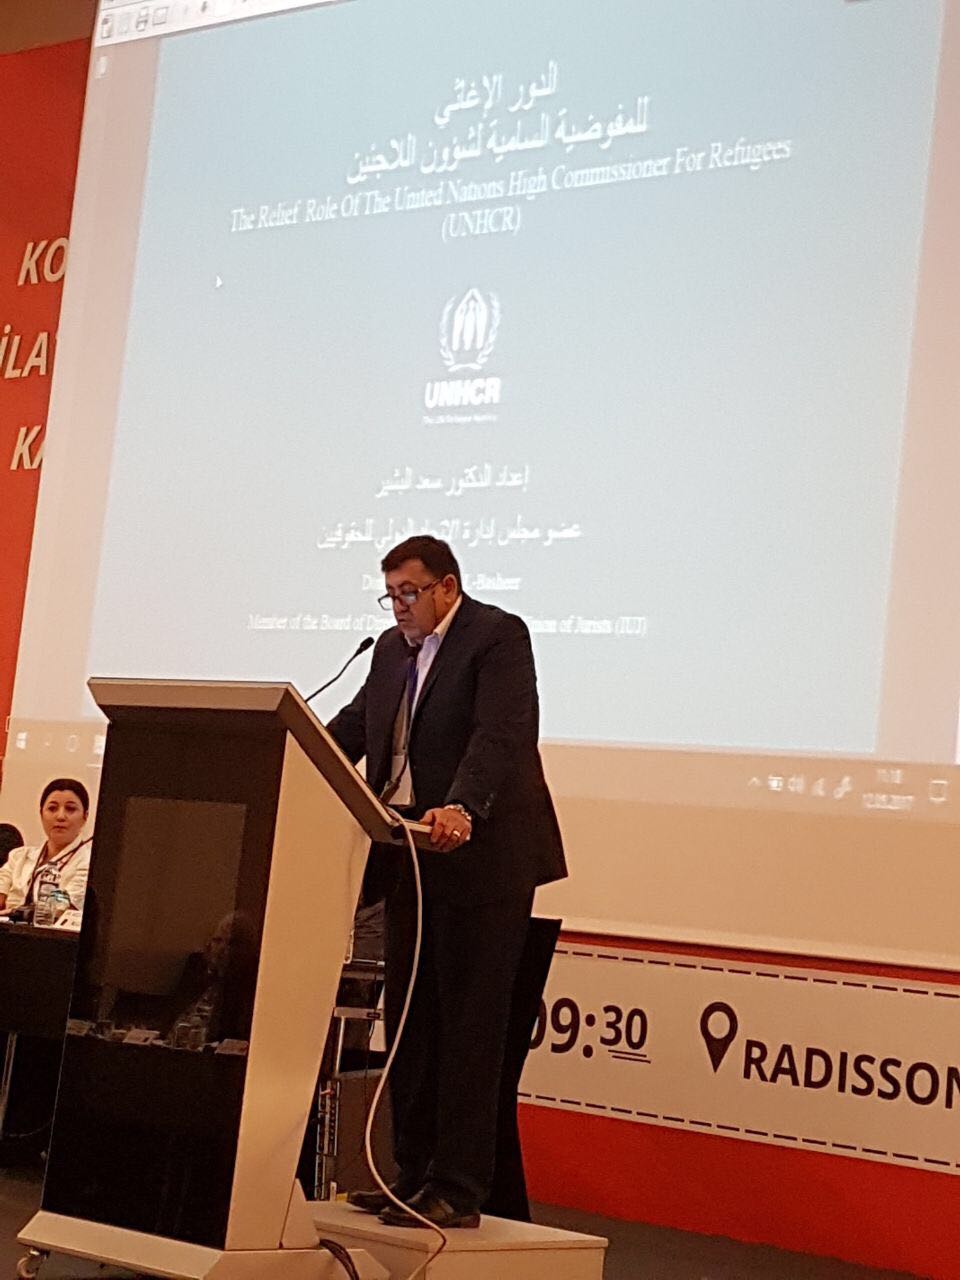 الدكتور سعد البشير عضو مجلس ادارة اﻻتحاد الدولي للحقوقين يشارك في الاجتماع الدولي الذي عقد في تركيا